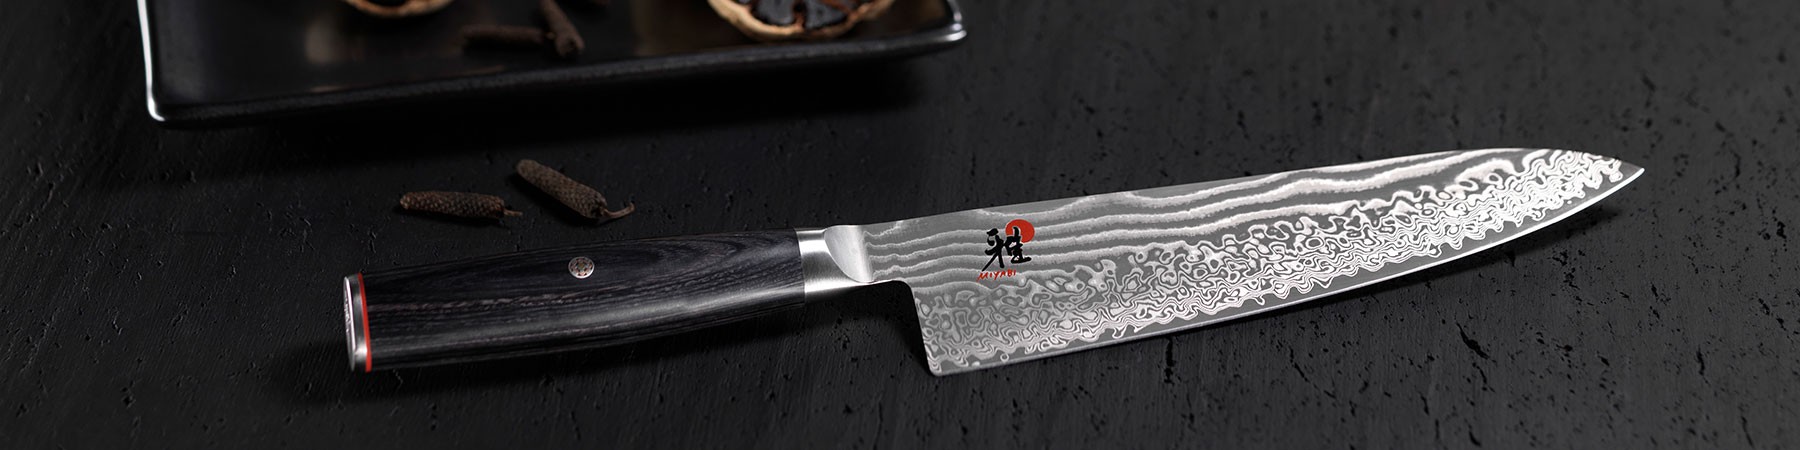 miyabi-knivar